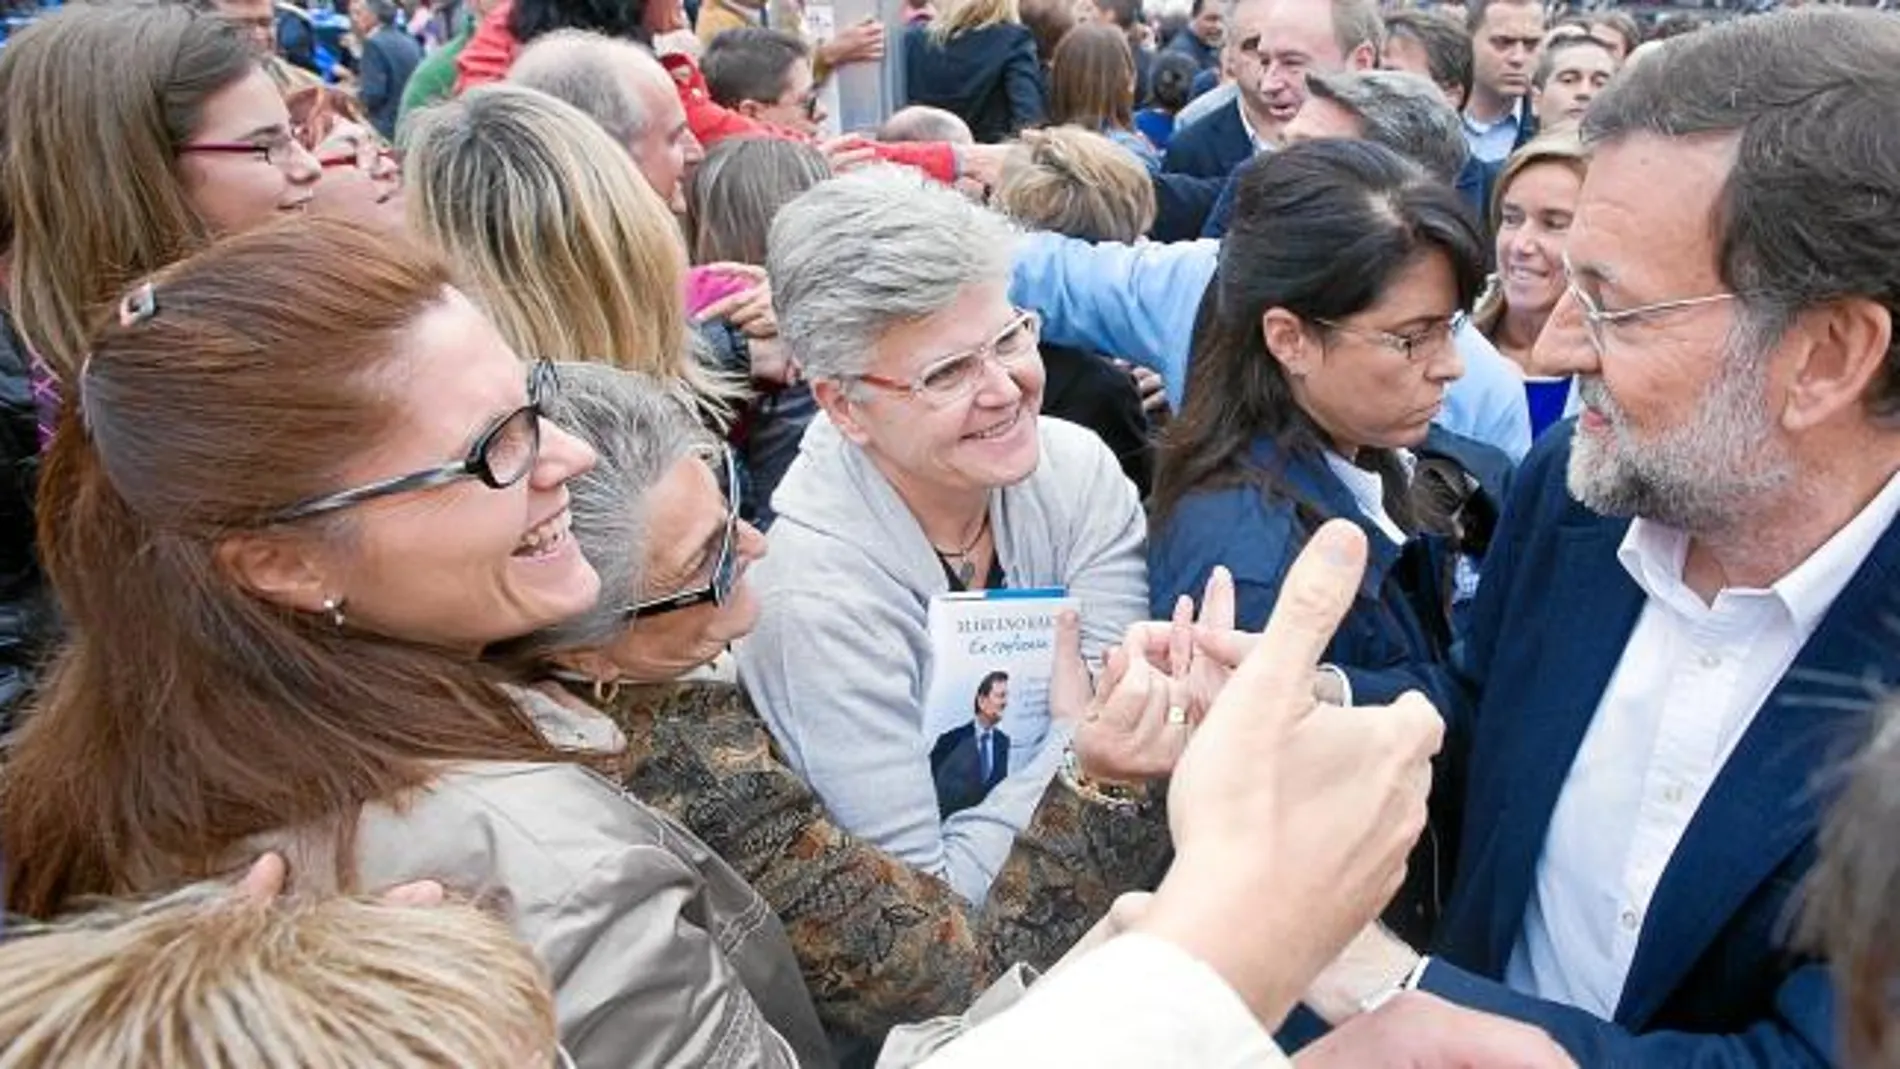 Las miles de personas congregadas en la plaza de Toros aclamaron a Mariano Rajoy